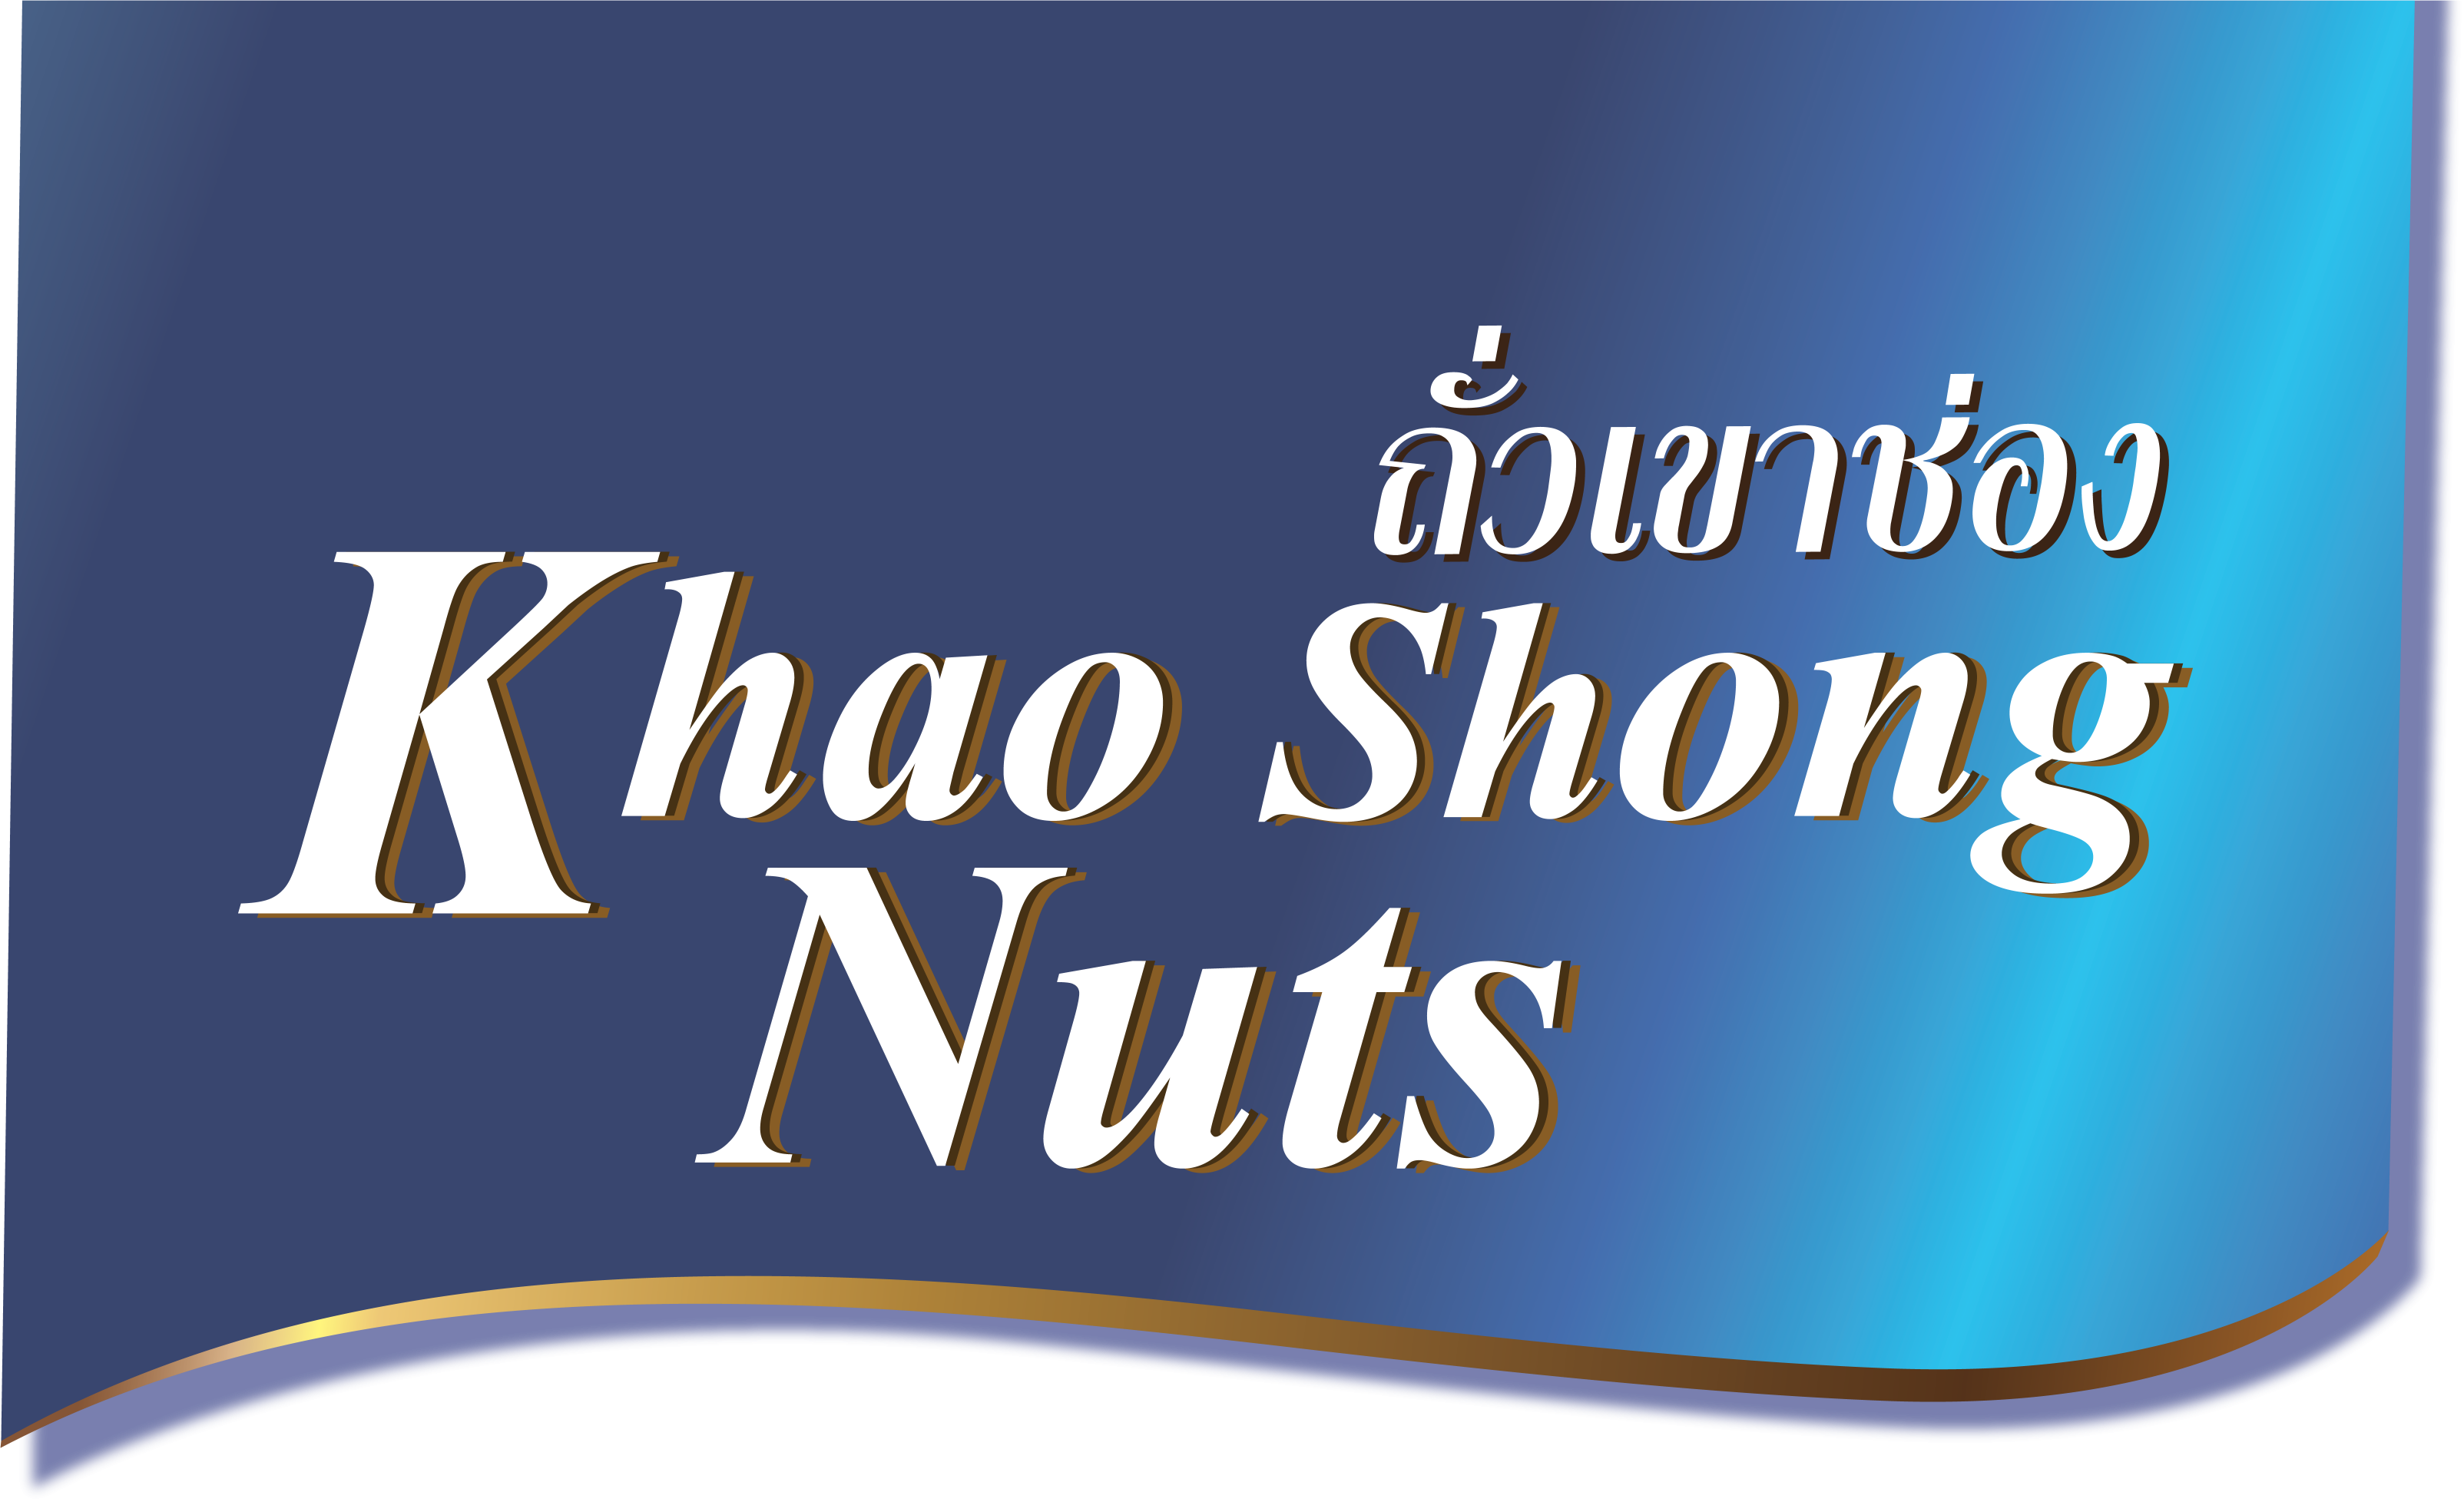 Khao Shong